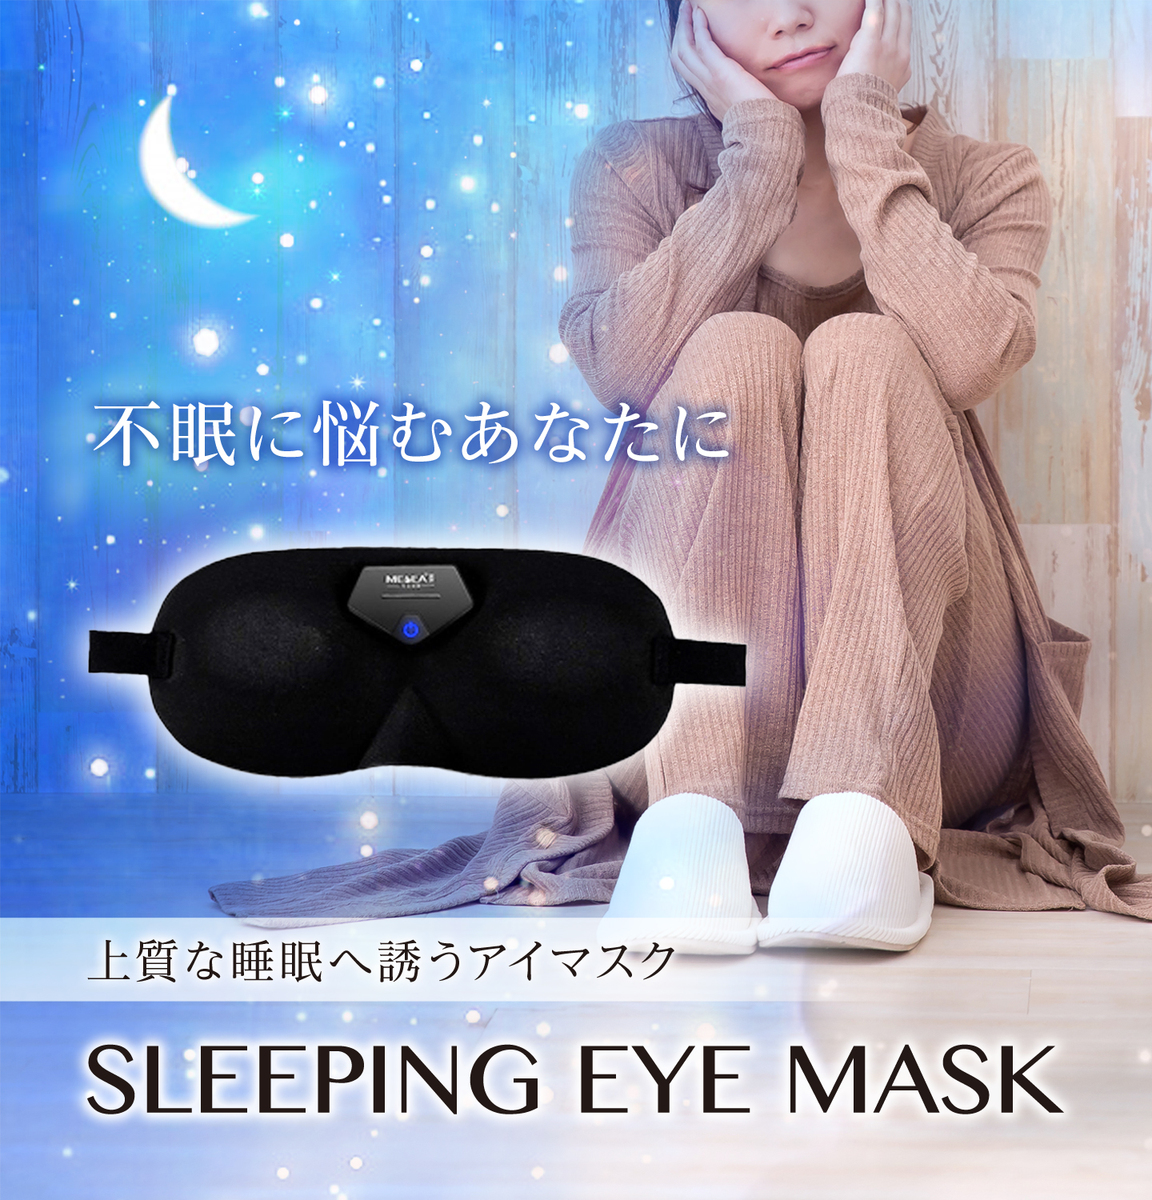 アイマスク 電子 アイピロー 眼精疲労 アイマスク 安眠 最新のスマート アイマスク 遮光 アイマッサージャー 目の疲れ グッズ EMS低周波 デスクワークの休憩に 視界クリア 頭痛 アイケア